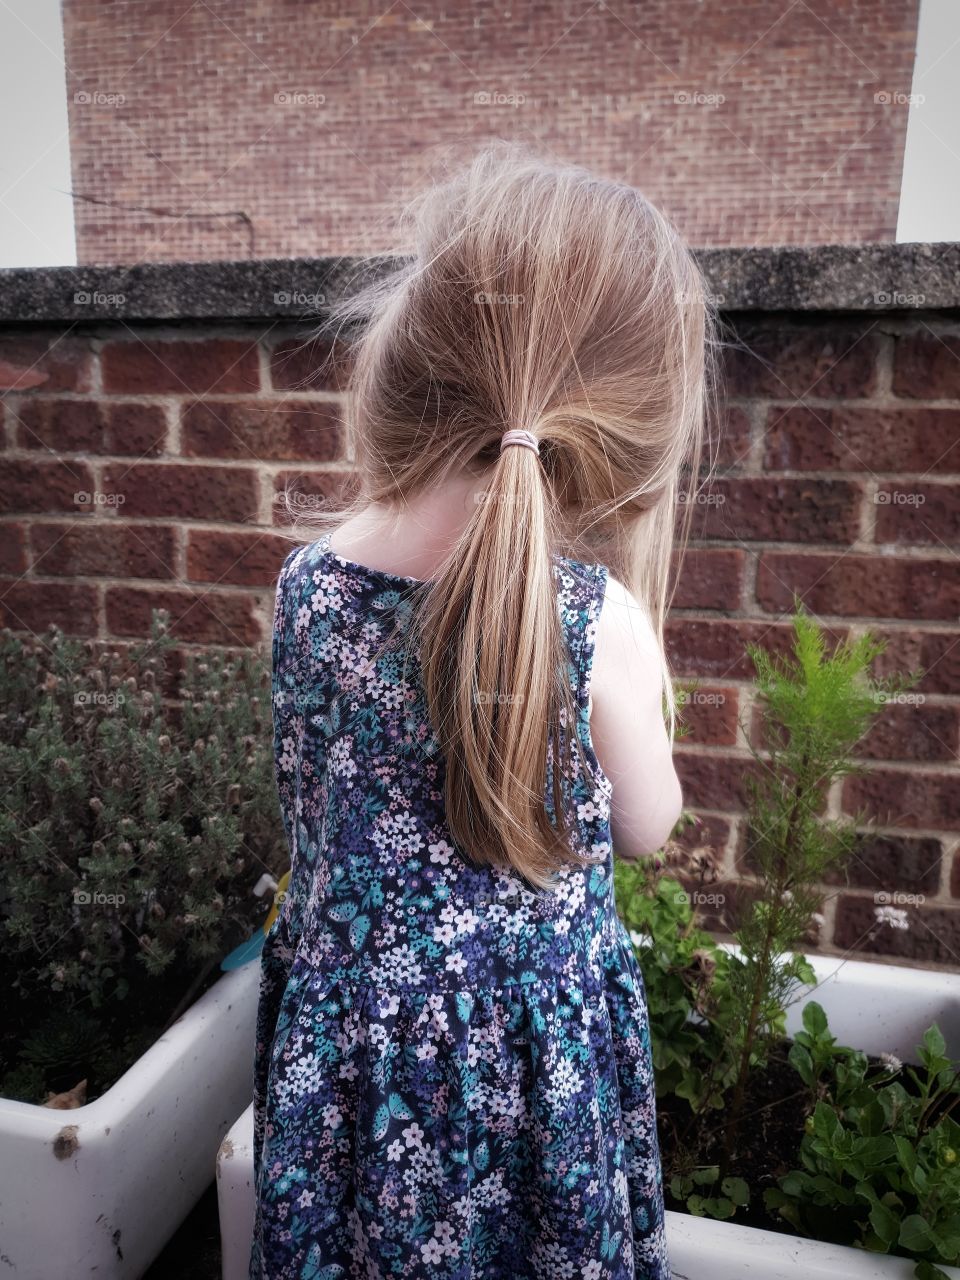 little girl in garden wearing dress. behind portrait